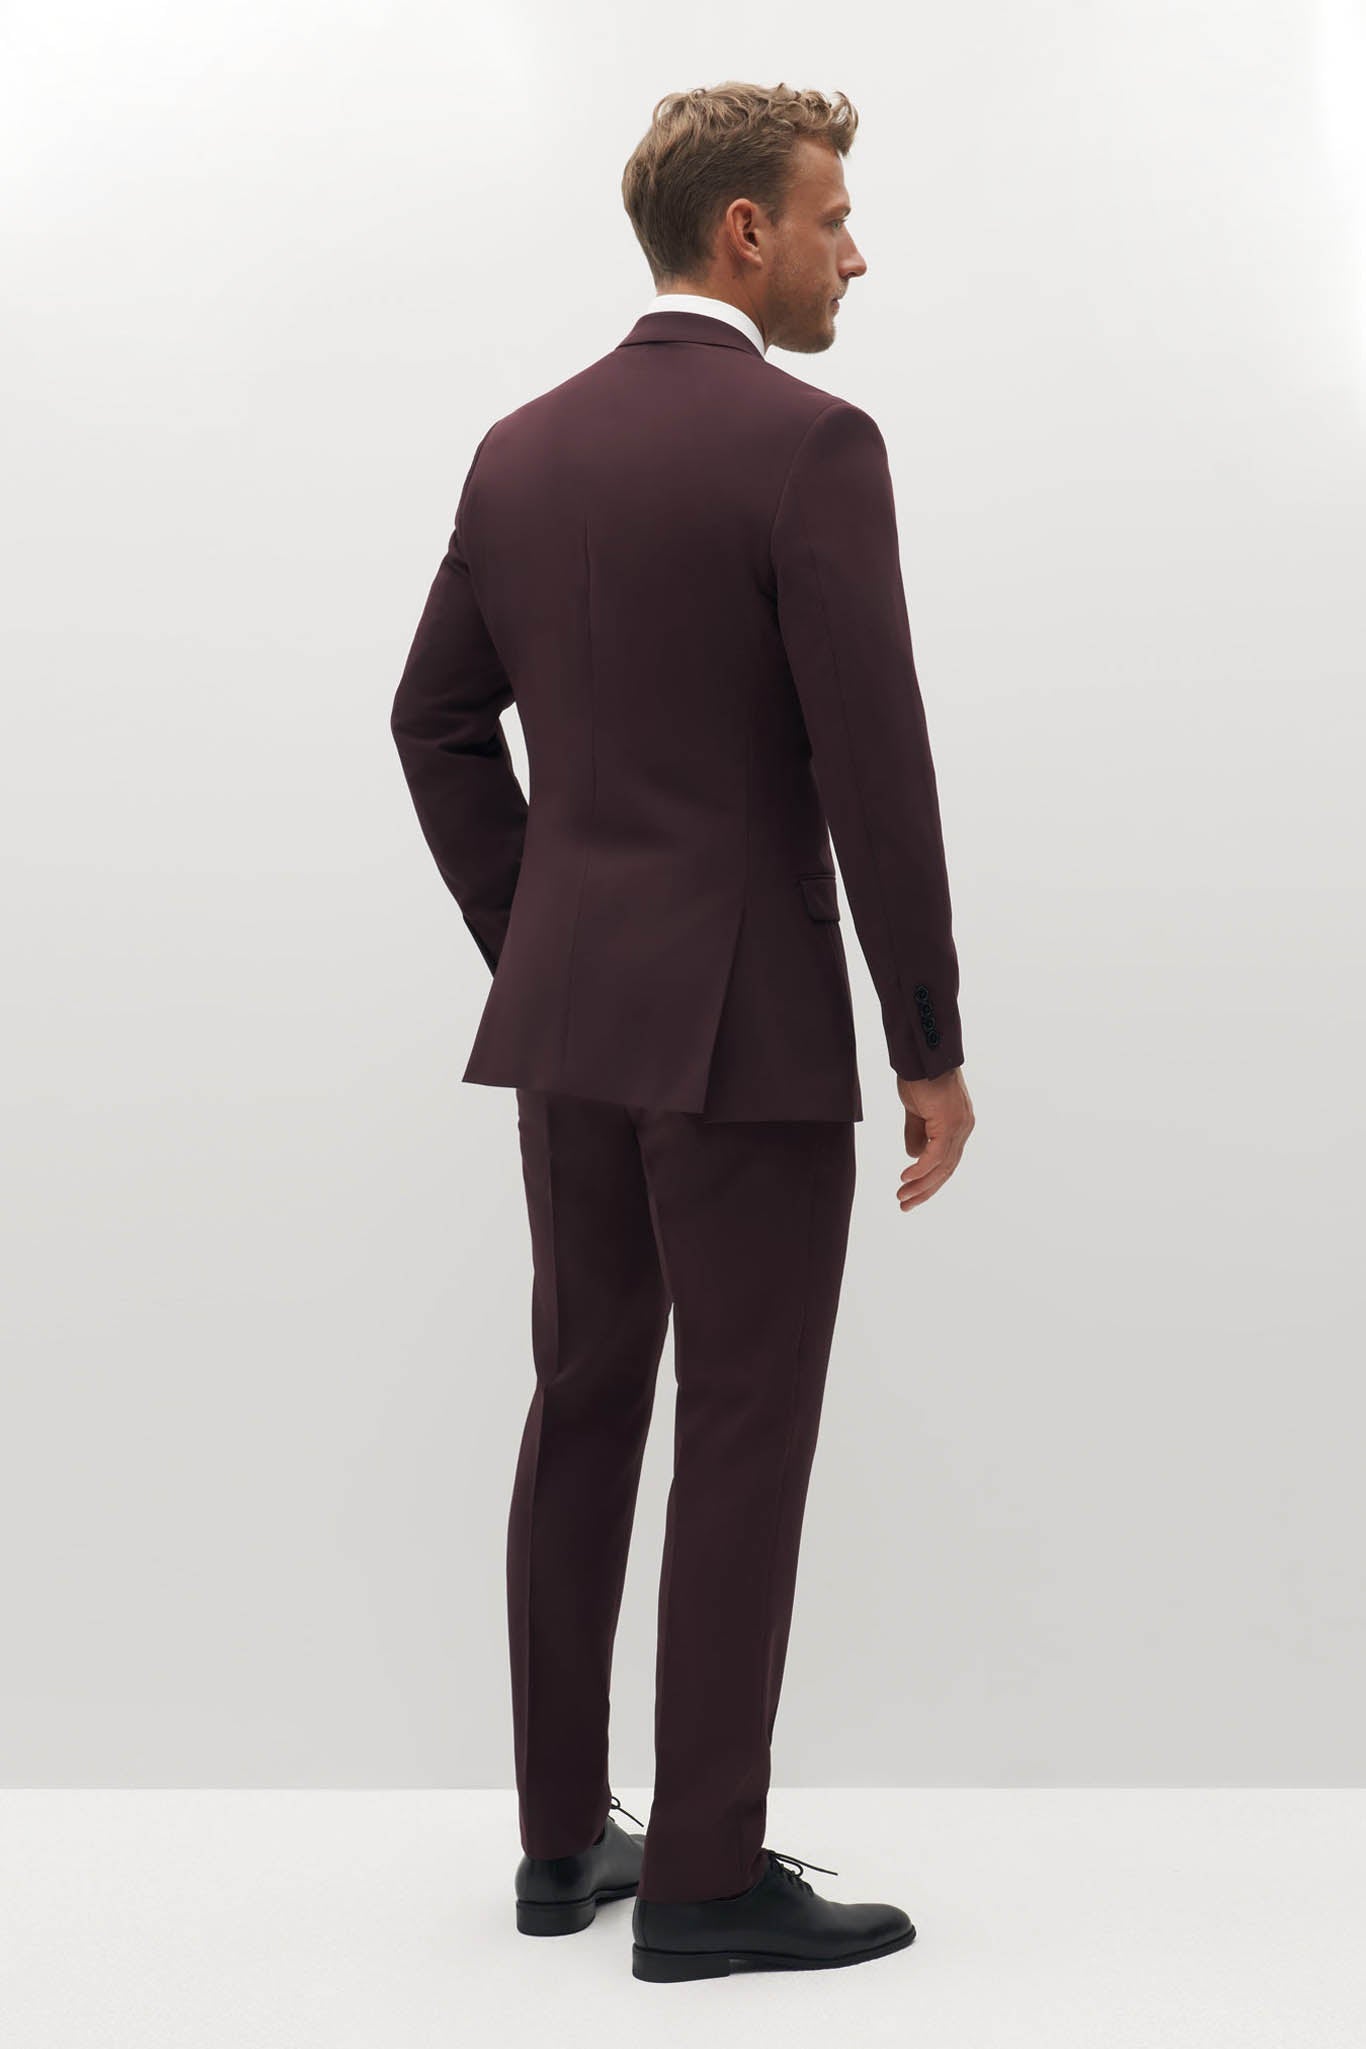 Burgundy Groomsman Suit by SuitShop